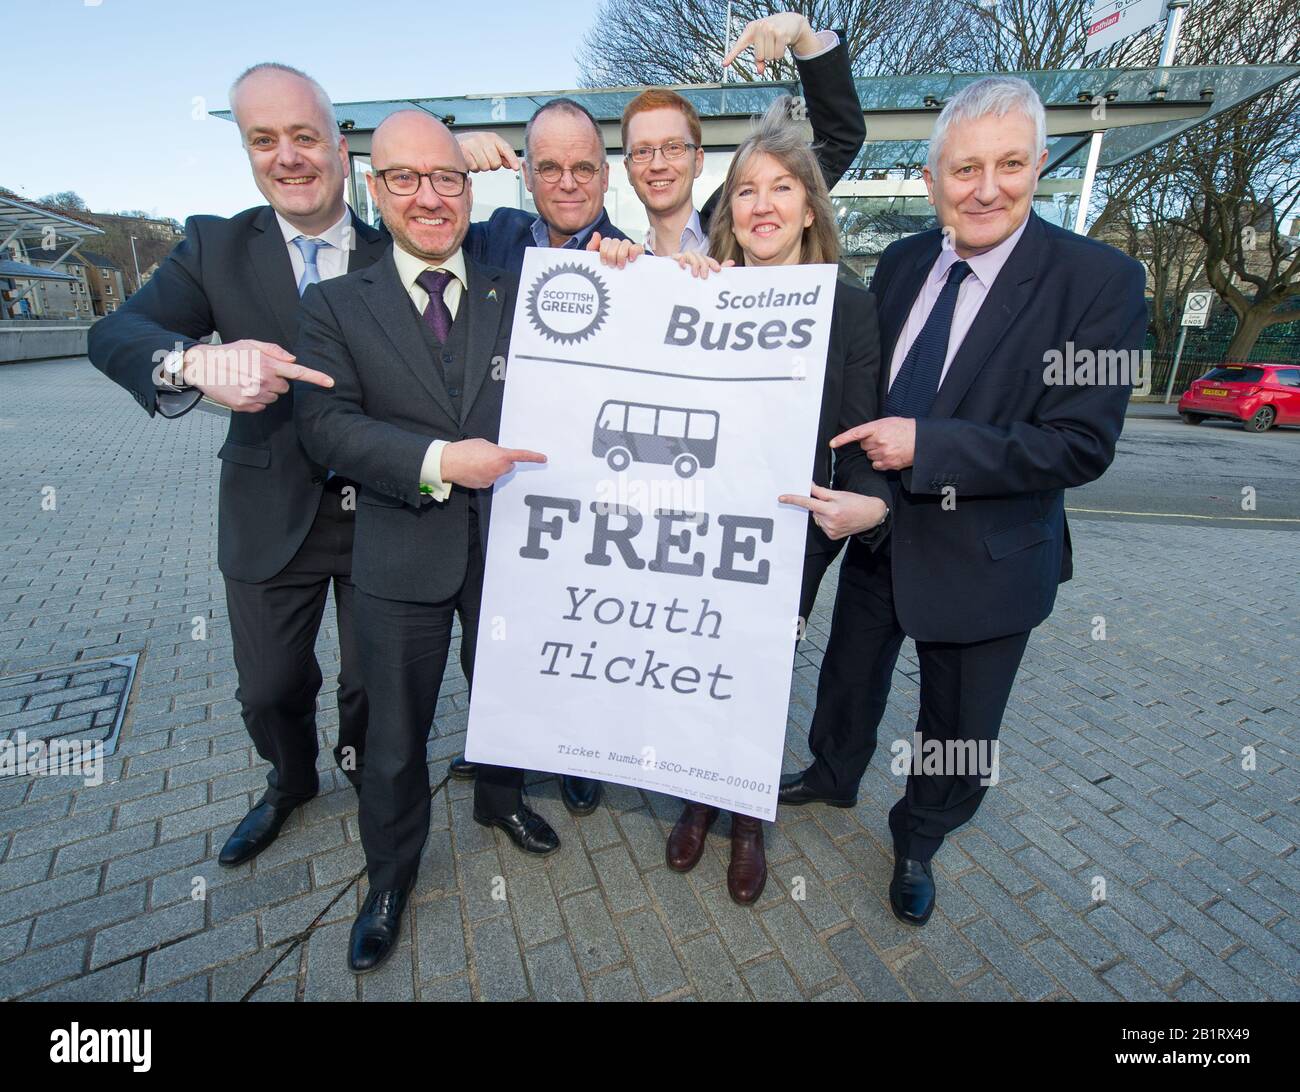 Edimburgo, Regno Unito. 27 Febbraio 2020. Nella foto: (L-R) Mark Ruskell MSP; Patrick Harvie MSP; Andy Wightman MSP; Ross Greer map; Alison Johnstone MSP; John Finnie MSP. In vista del dibattito sul bilancio di questo pomeriggio, i Co-Leader del Parlamento dei Verdi scozzesi, Alison Johnstone MSP e Patrick Harvie MSP insieme al gruppo Green MSP, faranno tappa a una fotocellula al di fuori del Parlamento scozzese per celebrare il loro viaggio gratuito in autobus per la vittoria di bilancio di meno di 19s. Ieri i Verdi scozzesi hanno annunciato che era stato raggiunto un accordo sul libero viaggio in autobus, più denaro per i consigli, più risorse per la sicurezza della comunità e un addit Foto Stock